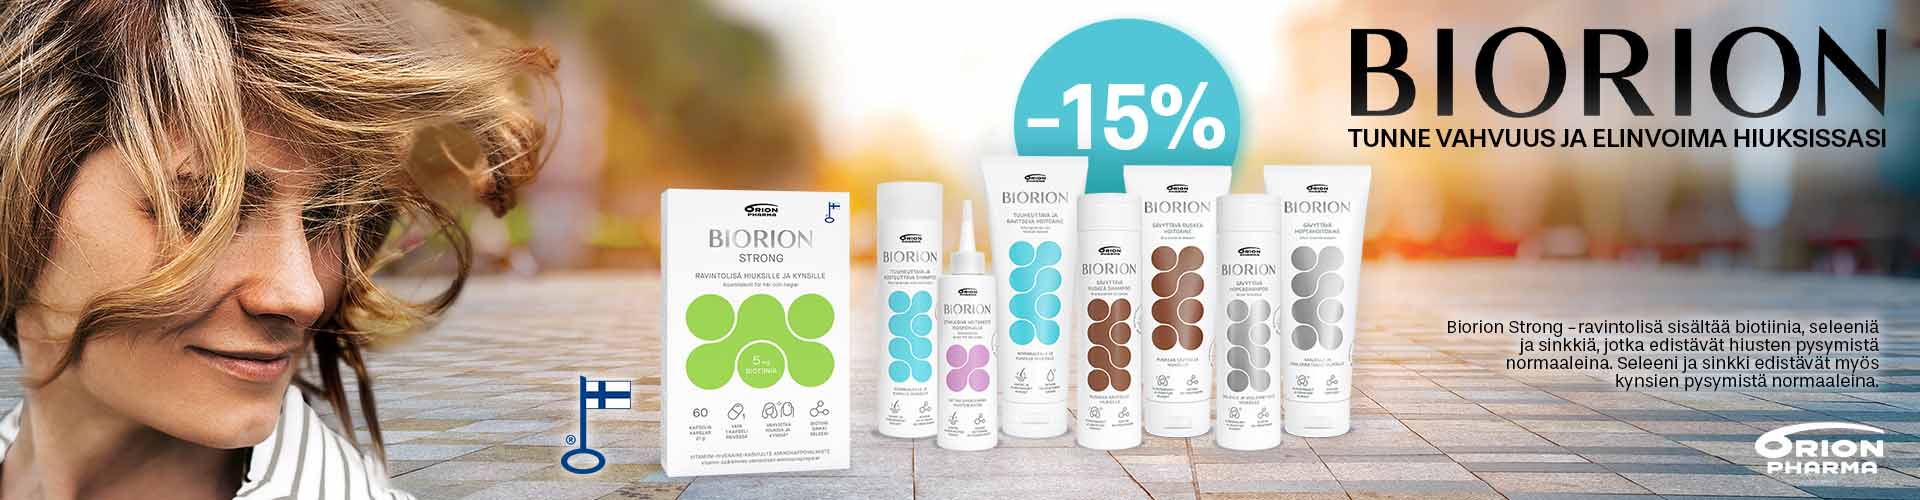 biorion uutuus sävyttävät hiustenhoitotuotteet tarjouksessa -15%